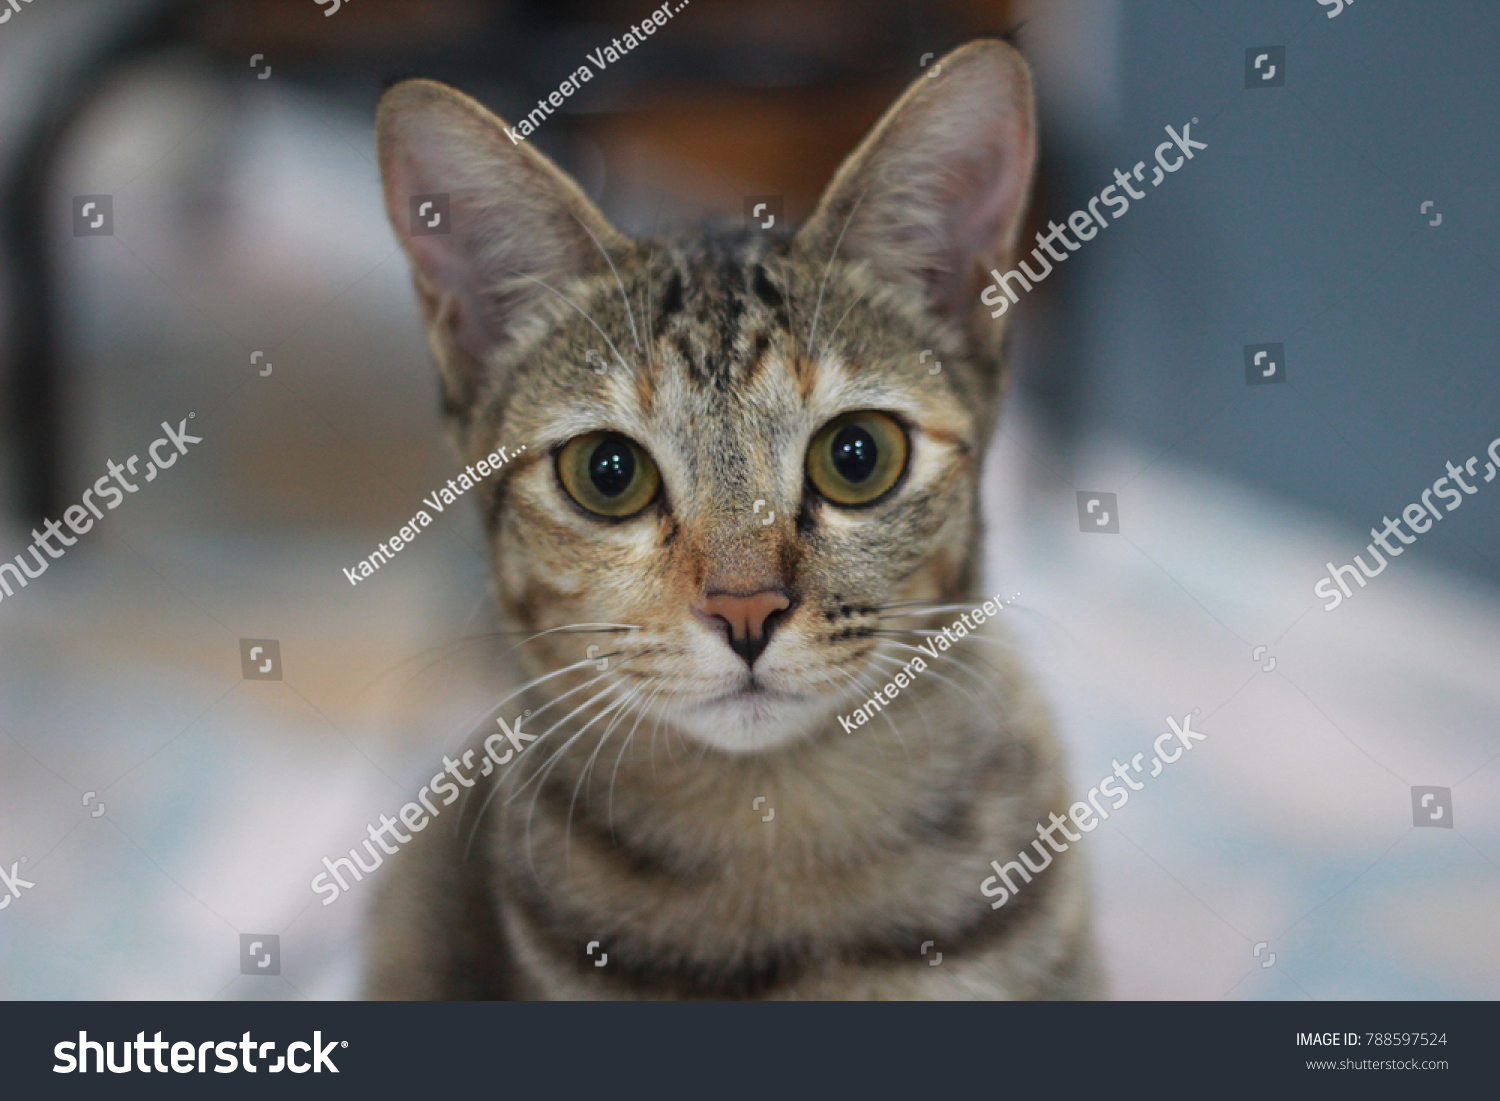 cat in thai language